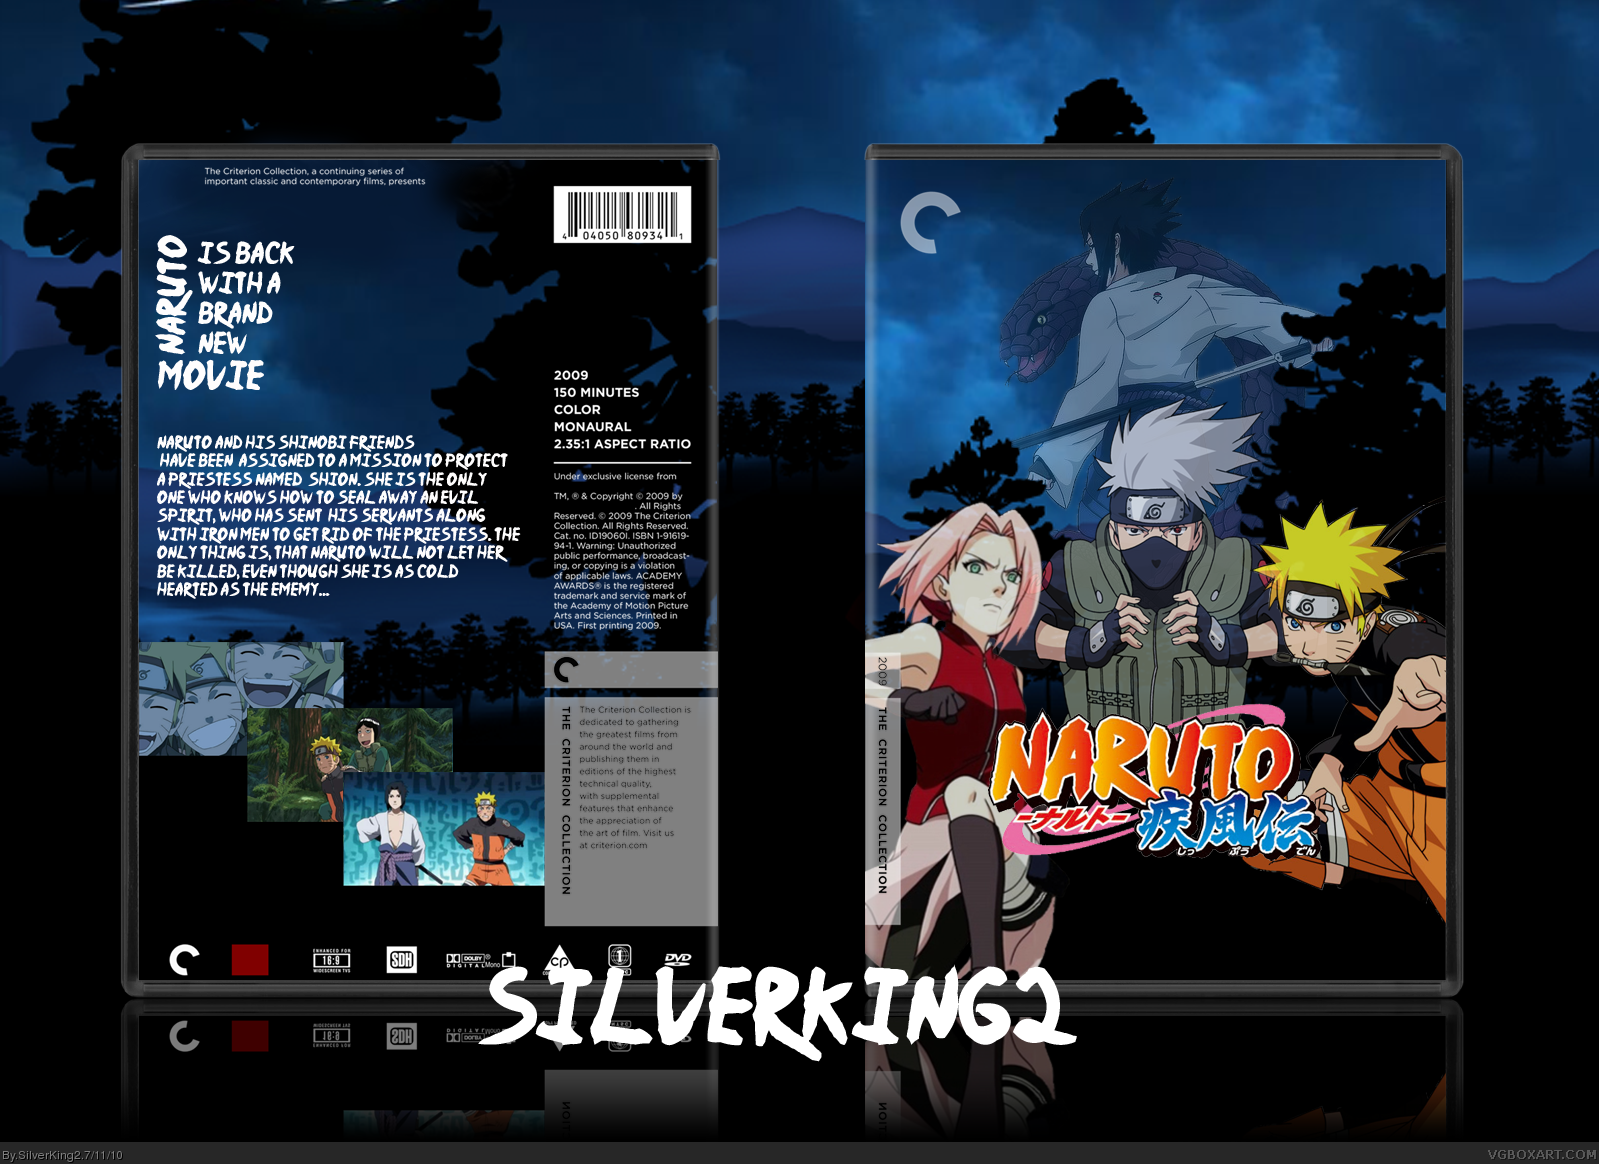 Naruto Shppuden: The Movie box cover